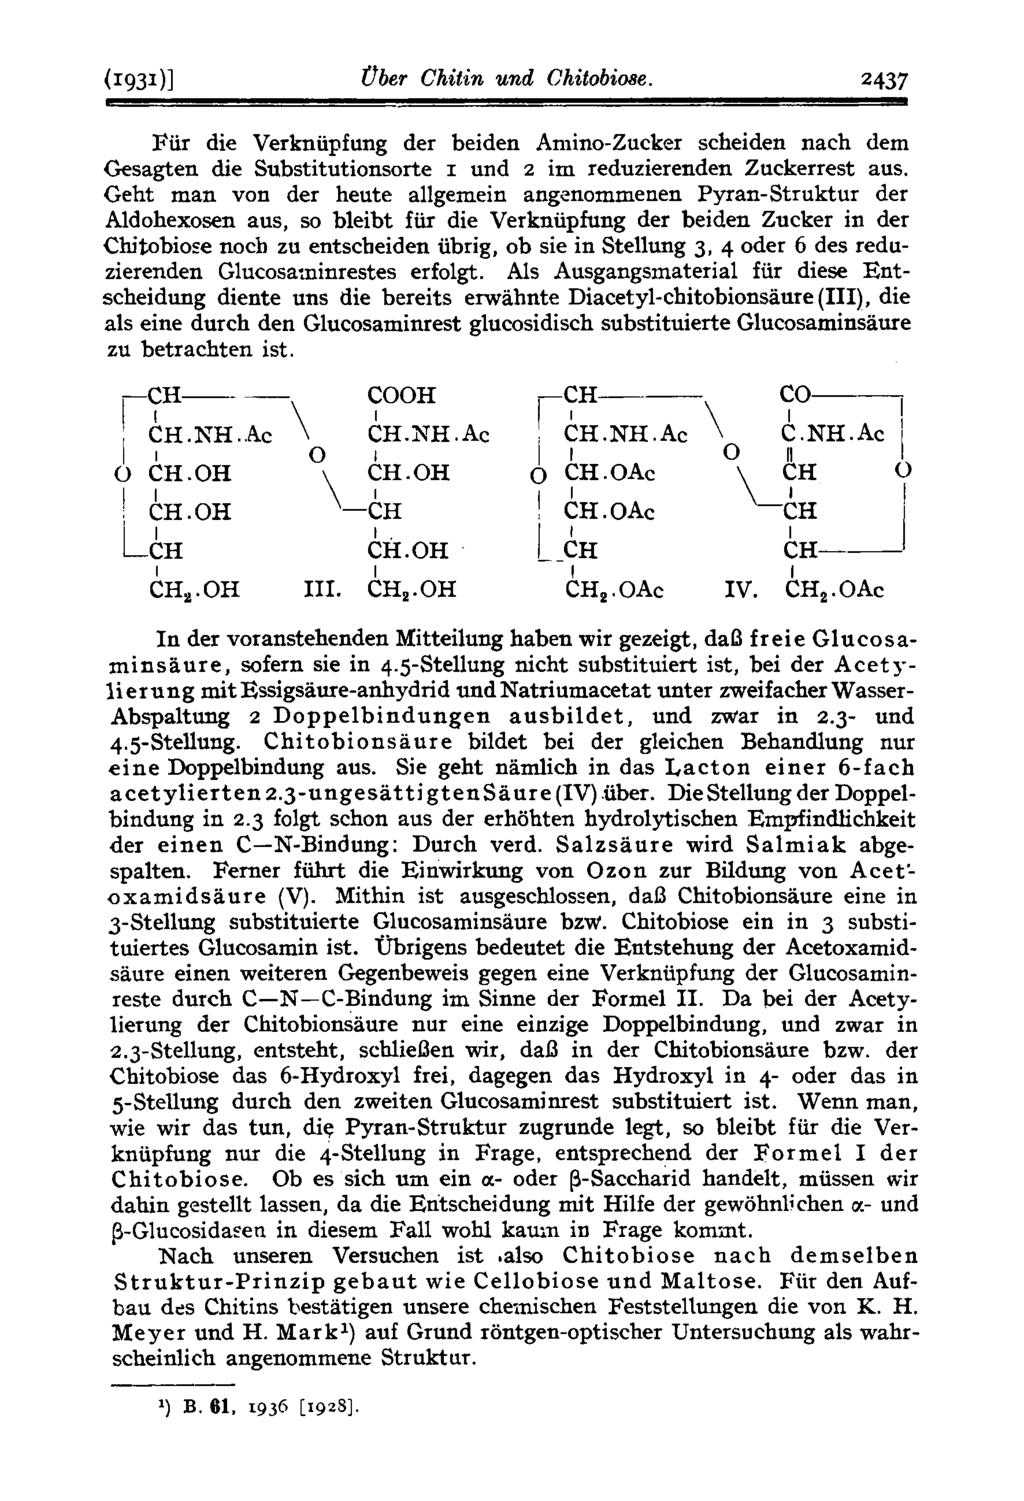 (193111 Uber Chitin und Chitobime. 2437 Fiir die Verkniipfung der beiden Amino-Zucker scheiden nach dem Gesagten die Substitutionsorte und 2 im reduzierenden Zuckerrest aus.